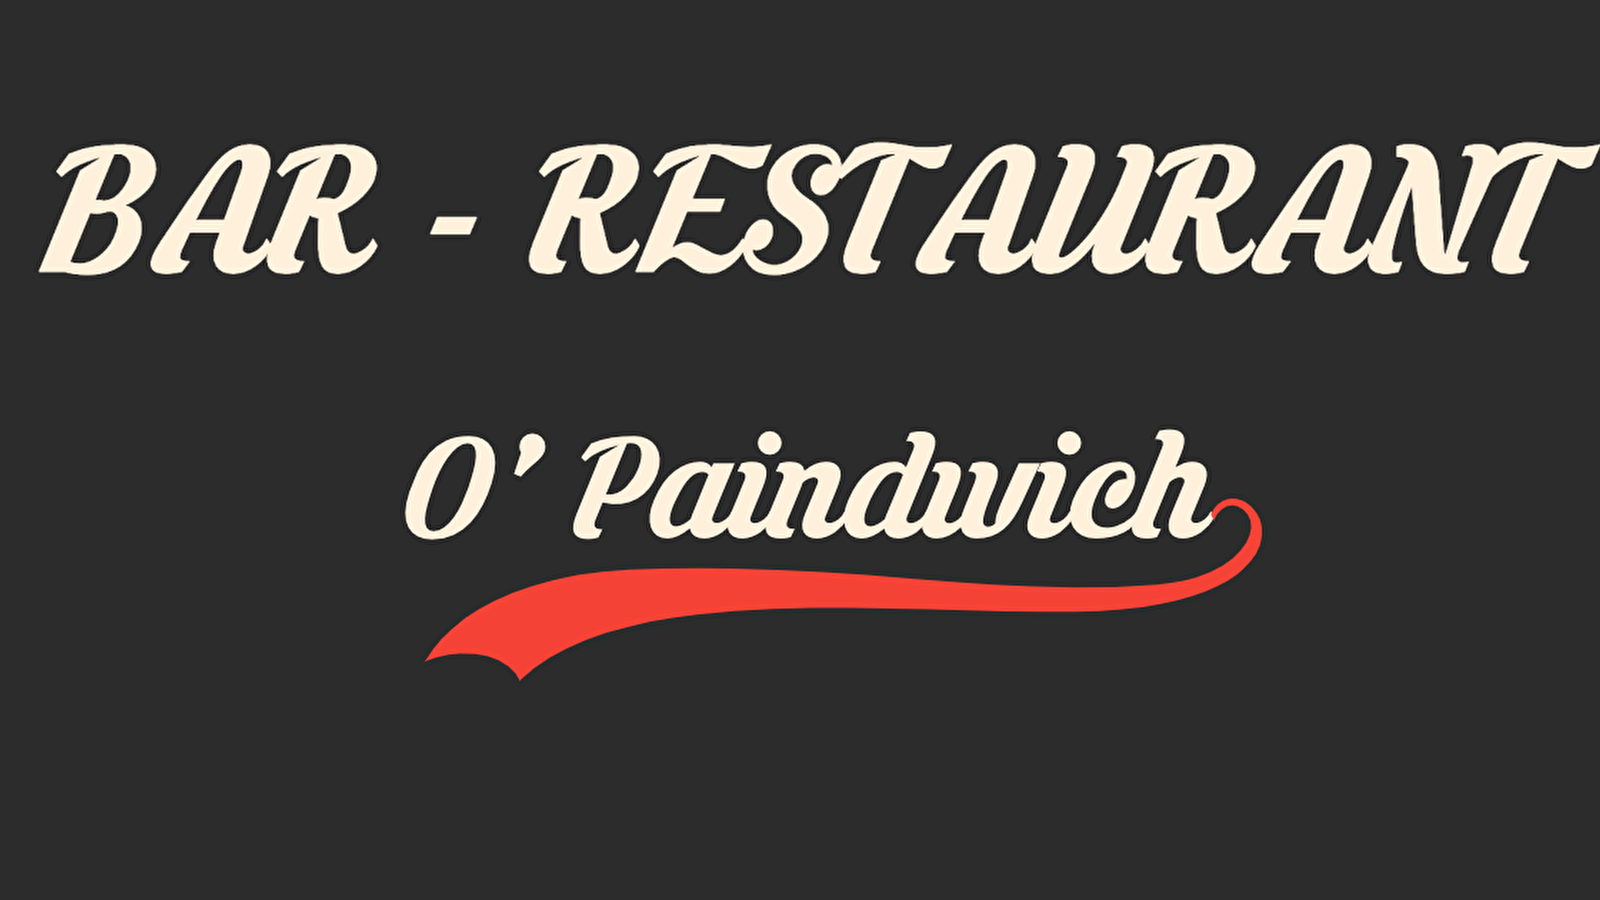 O'PainDwich